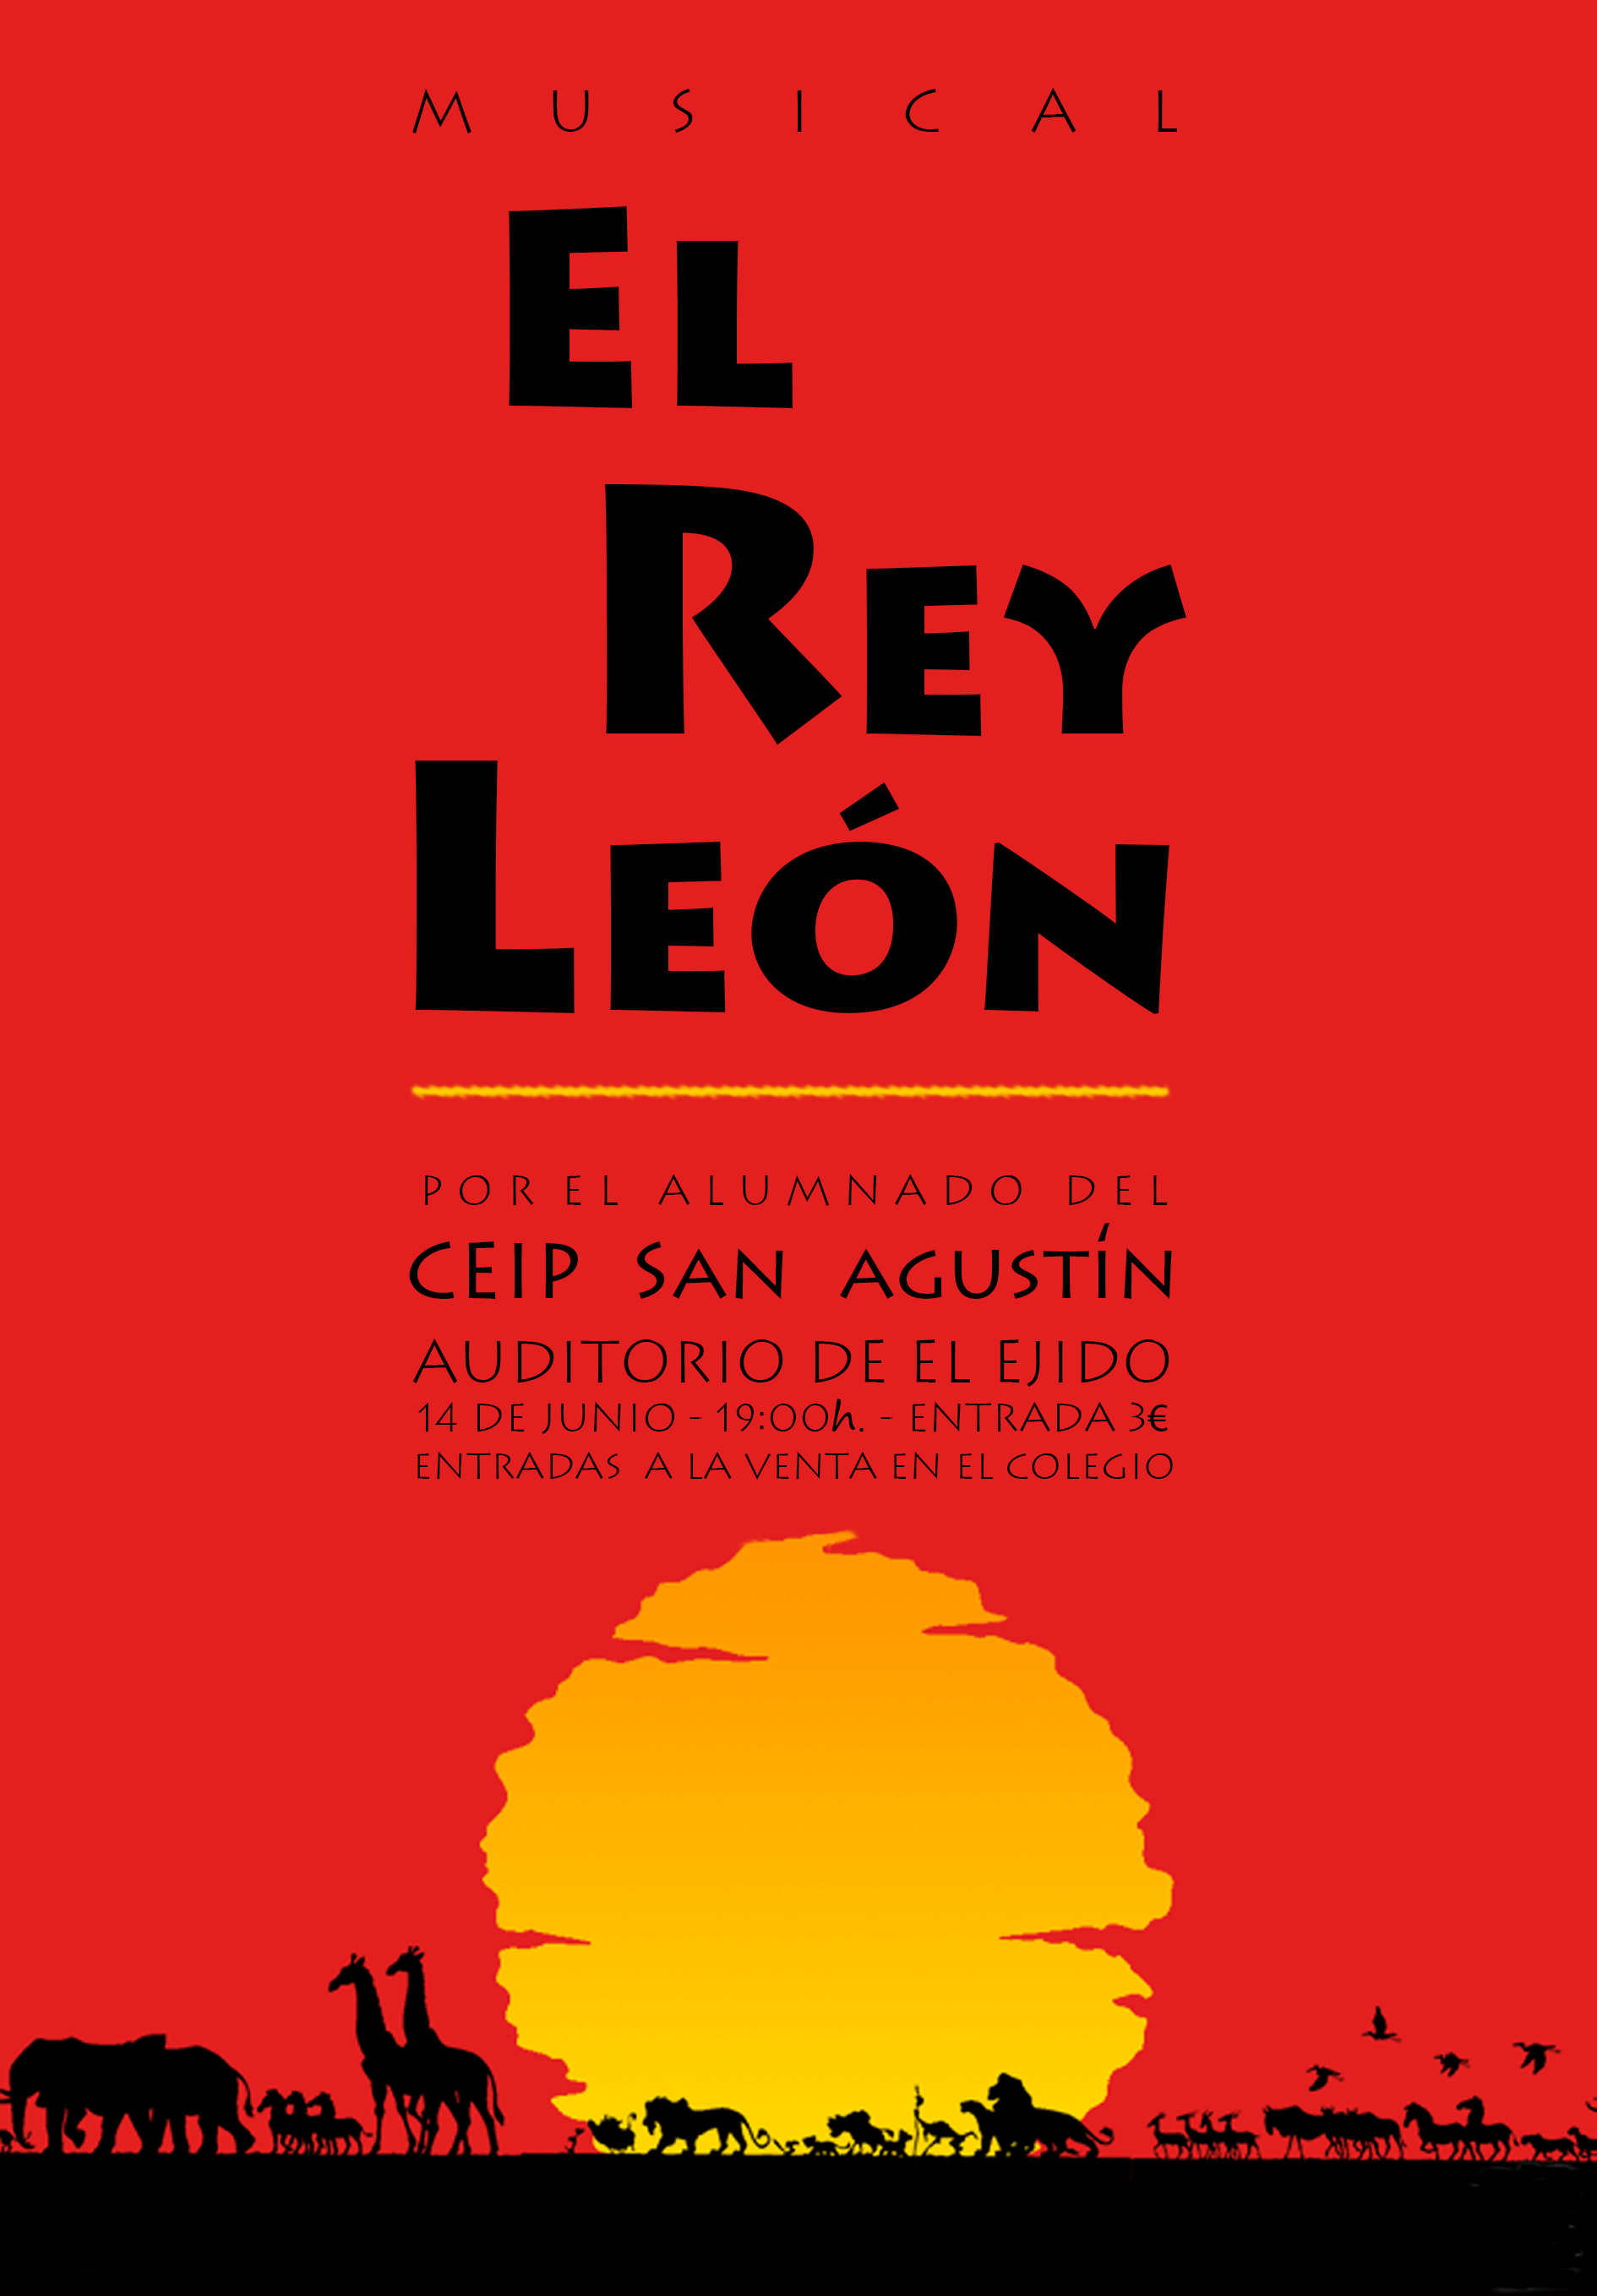 Musical "El Rey León"